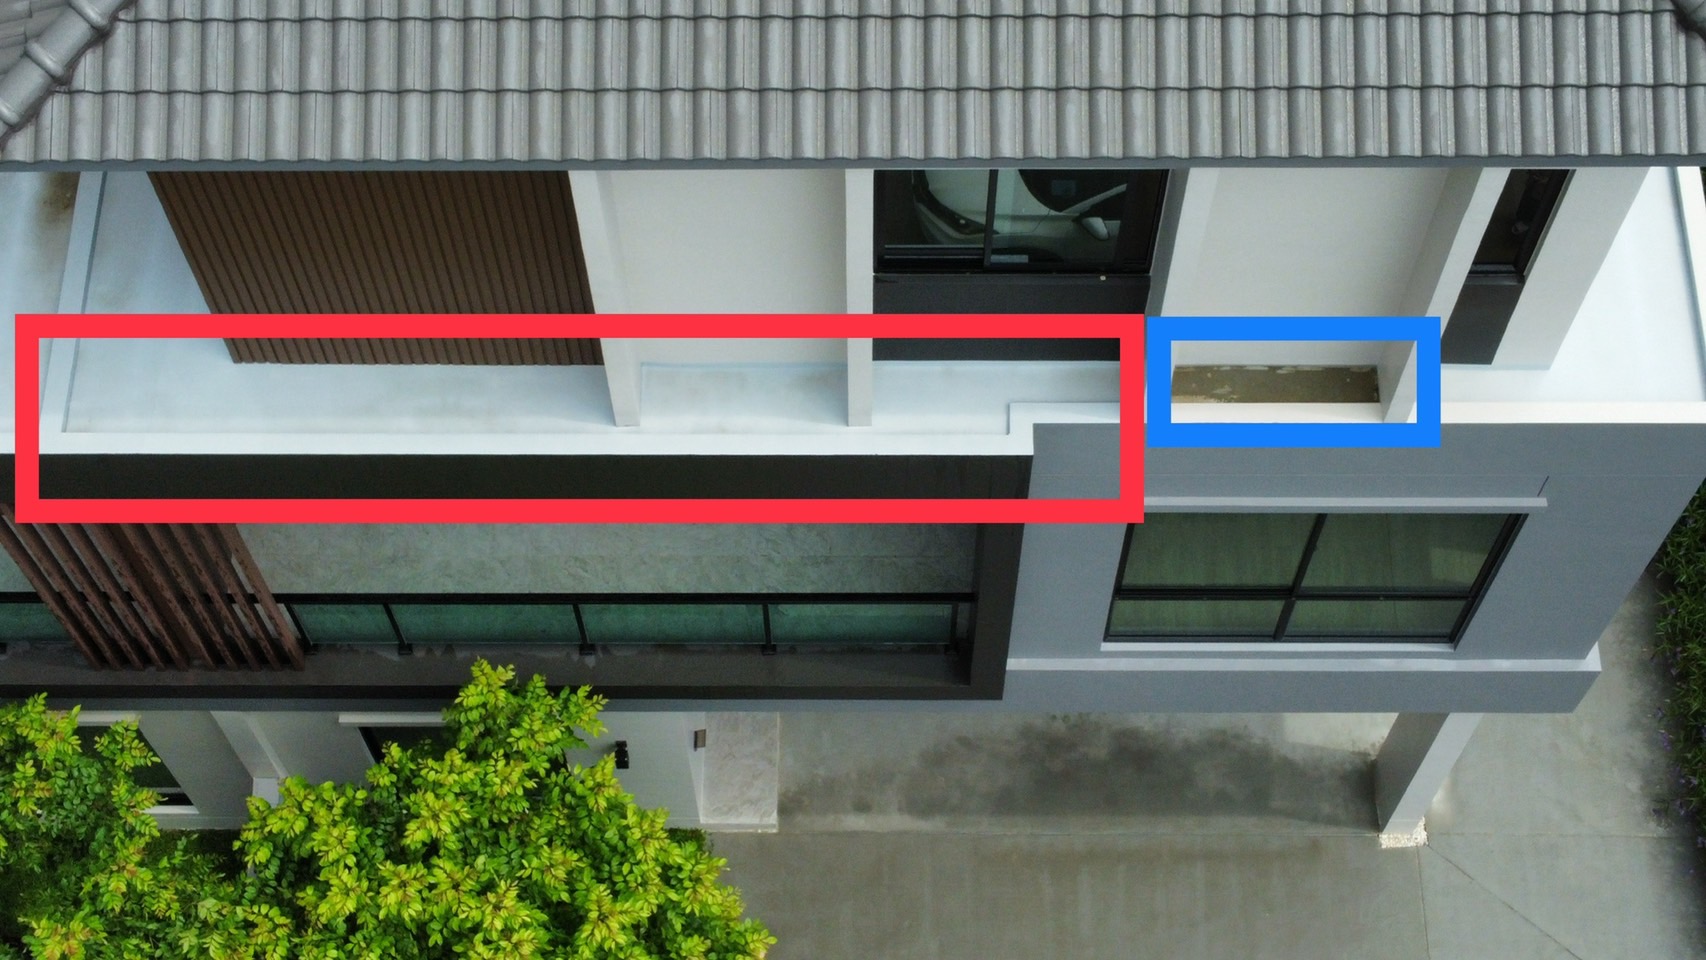 ภาพตัวอย่างงานจริง : พื้นกันสาด ค.ส.ล. ควรขัดผิวและควรทากันซึม(วงฟ้า) และแก้ไขน้ำขังบนพื้นกันสาด ค.ส.ล.(วงแดง)